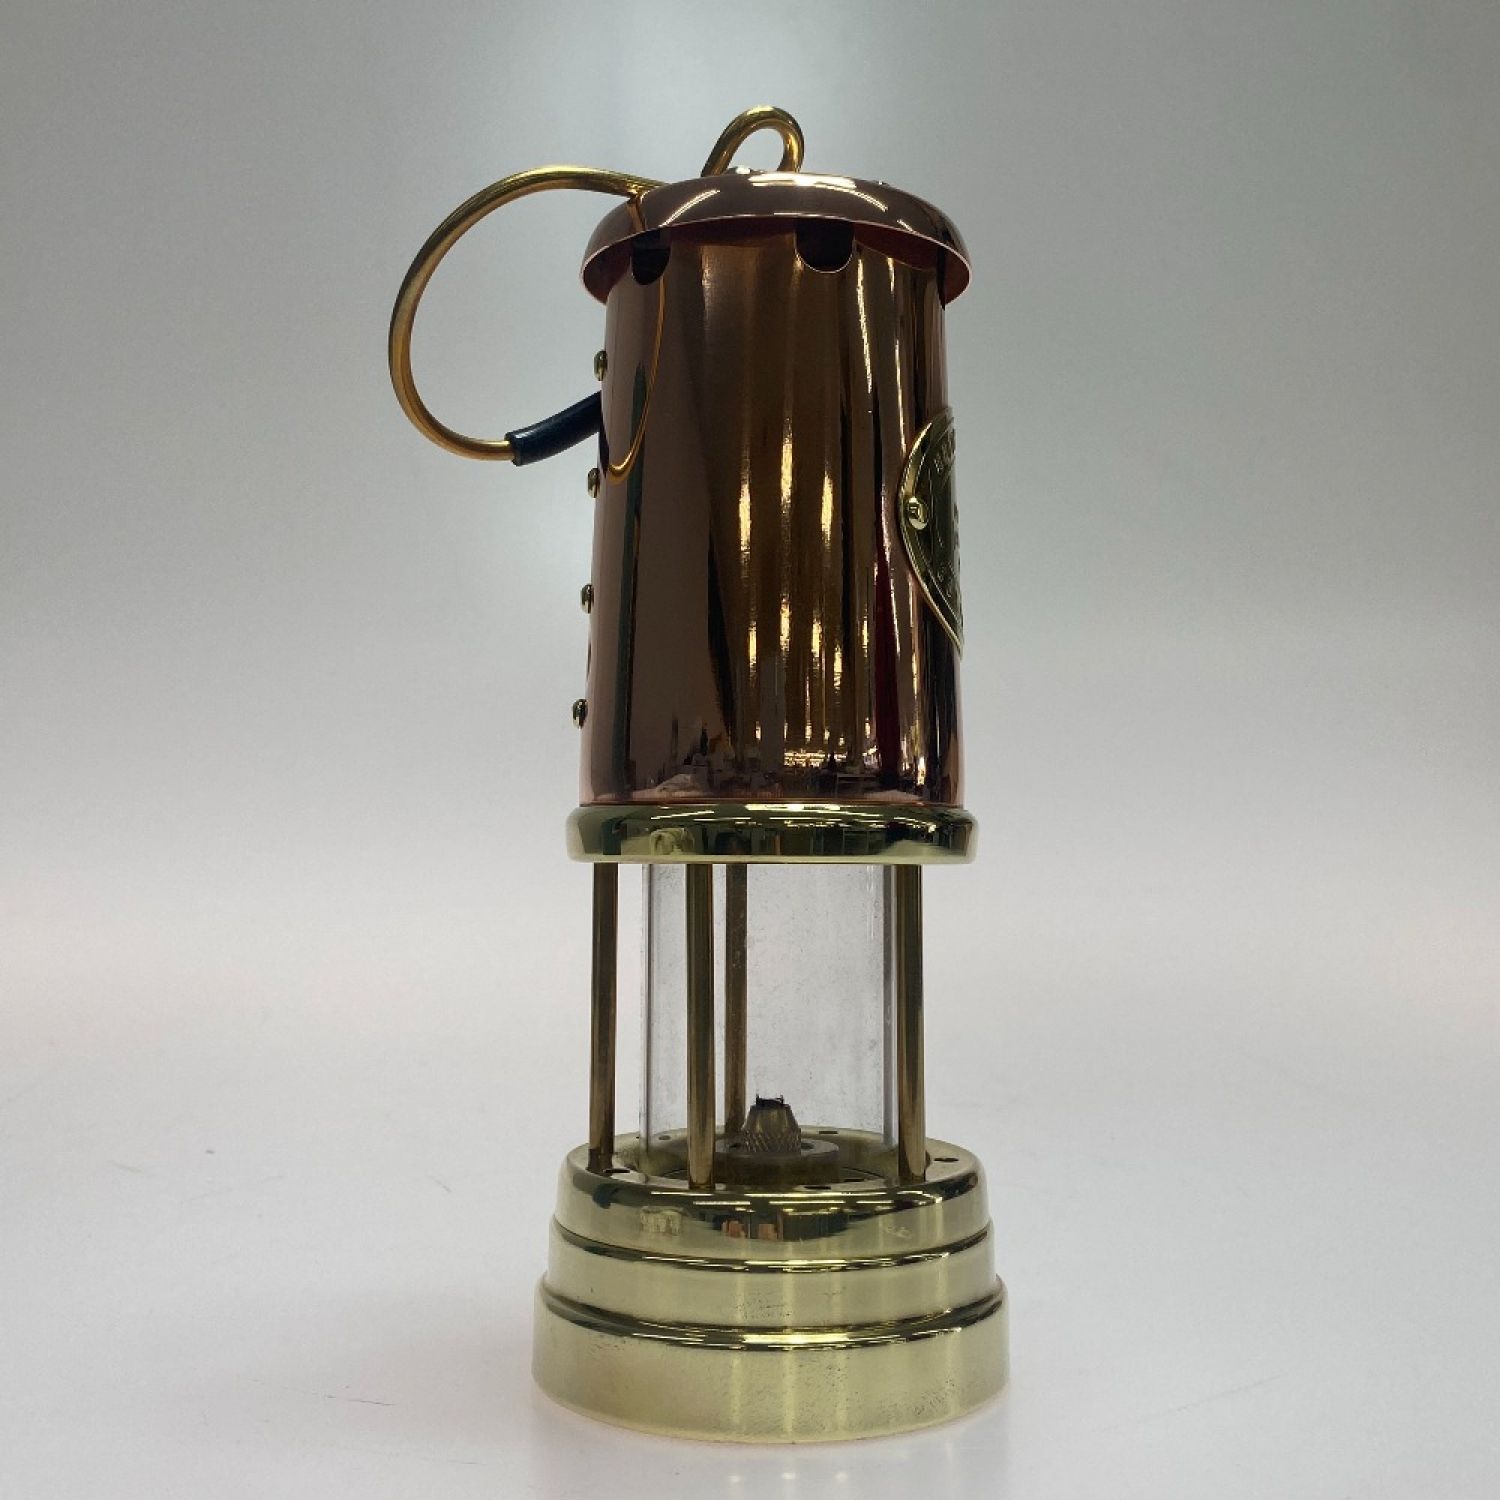 ωω Miner's Lamp マイナーズランプ アウトドア ランタン オイル 